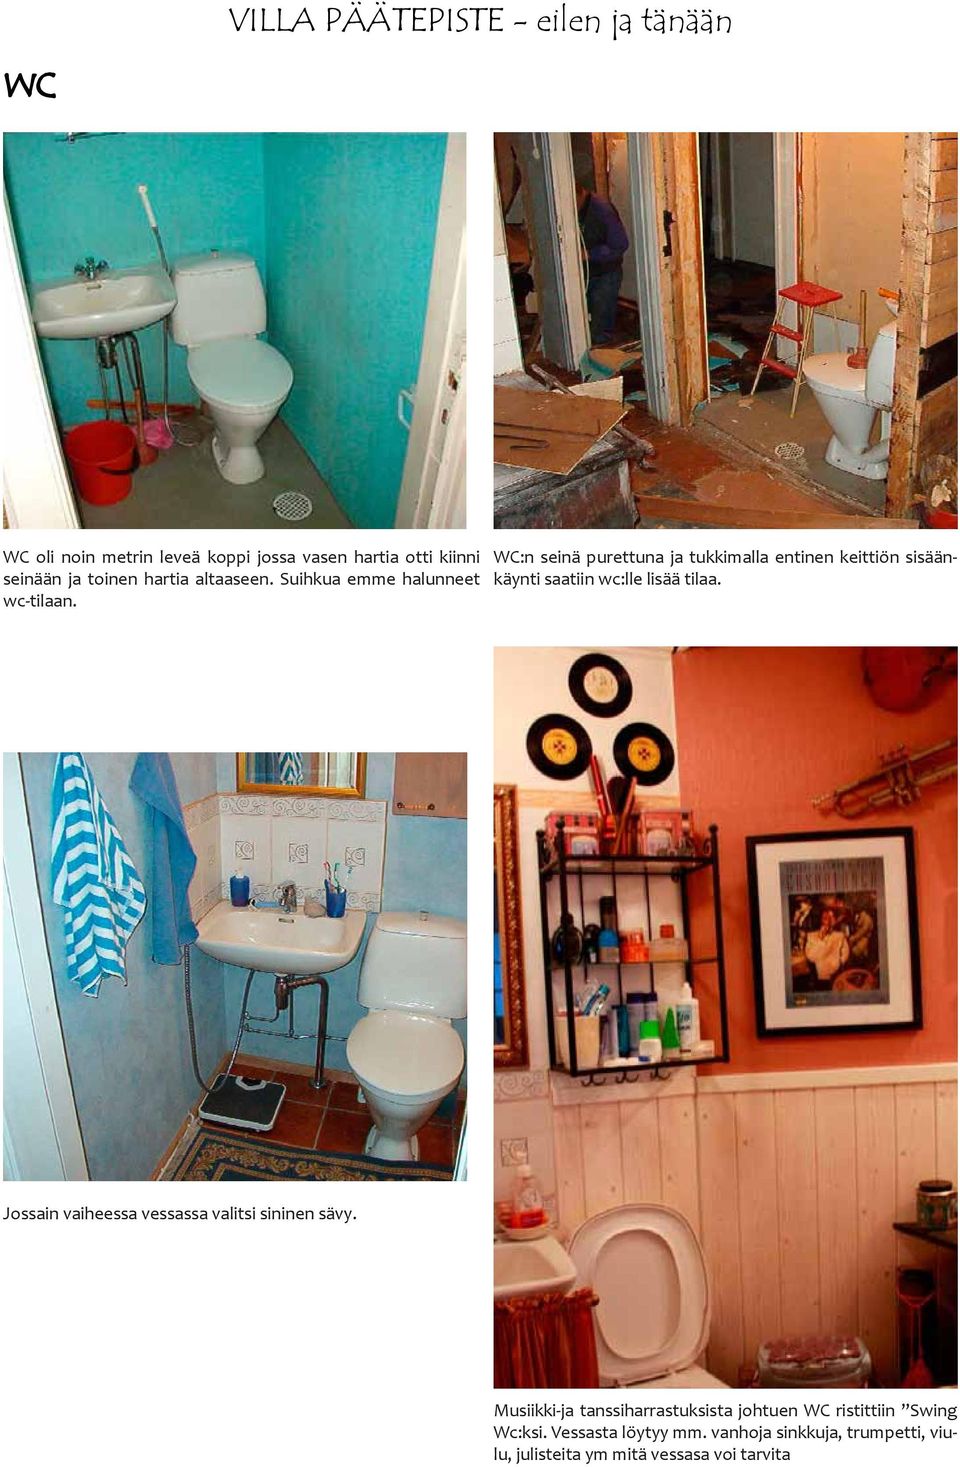 WC:n seinä purettuna ja tukkimalla entinen keittiön sisäänkäynti saatiin wc:lle lisää tilaa.